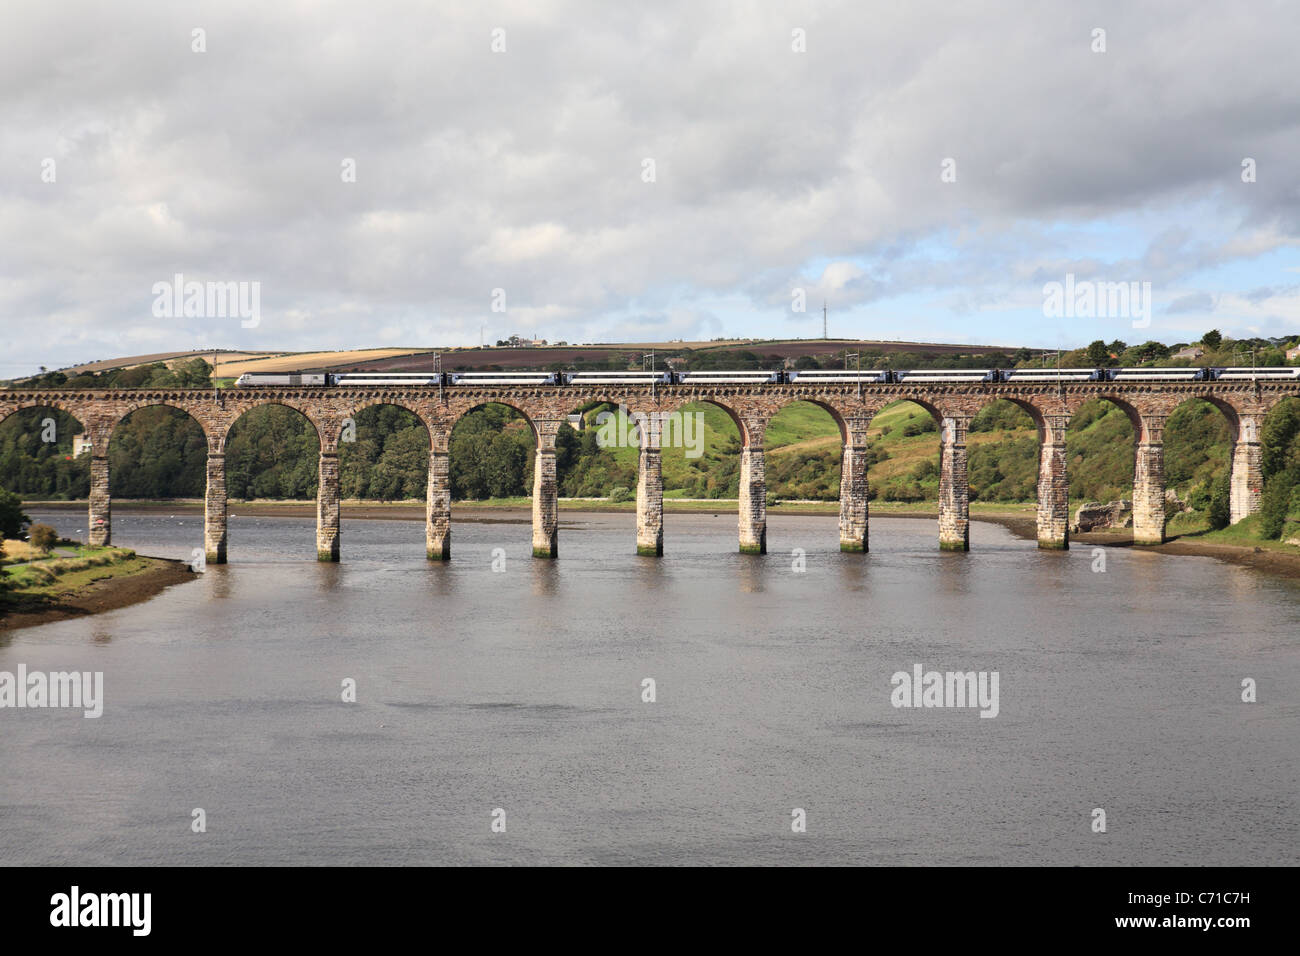 Una costa orientale di un treno ad alta velocità attraversa la frontiera reale ponte sopra il fiume Tweed in Berwick, Northumberland, England, Regno Unito Foto Stock